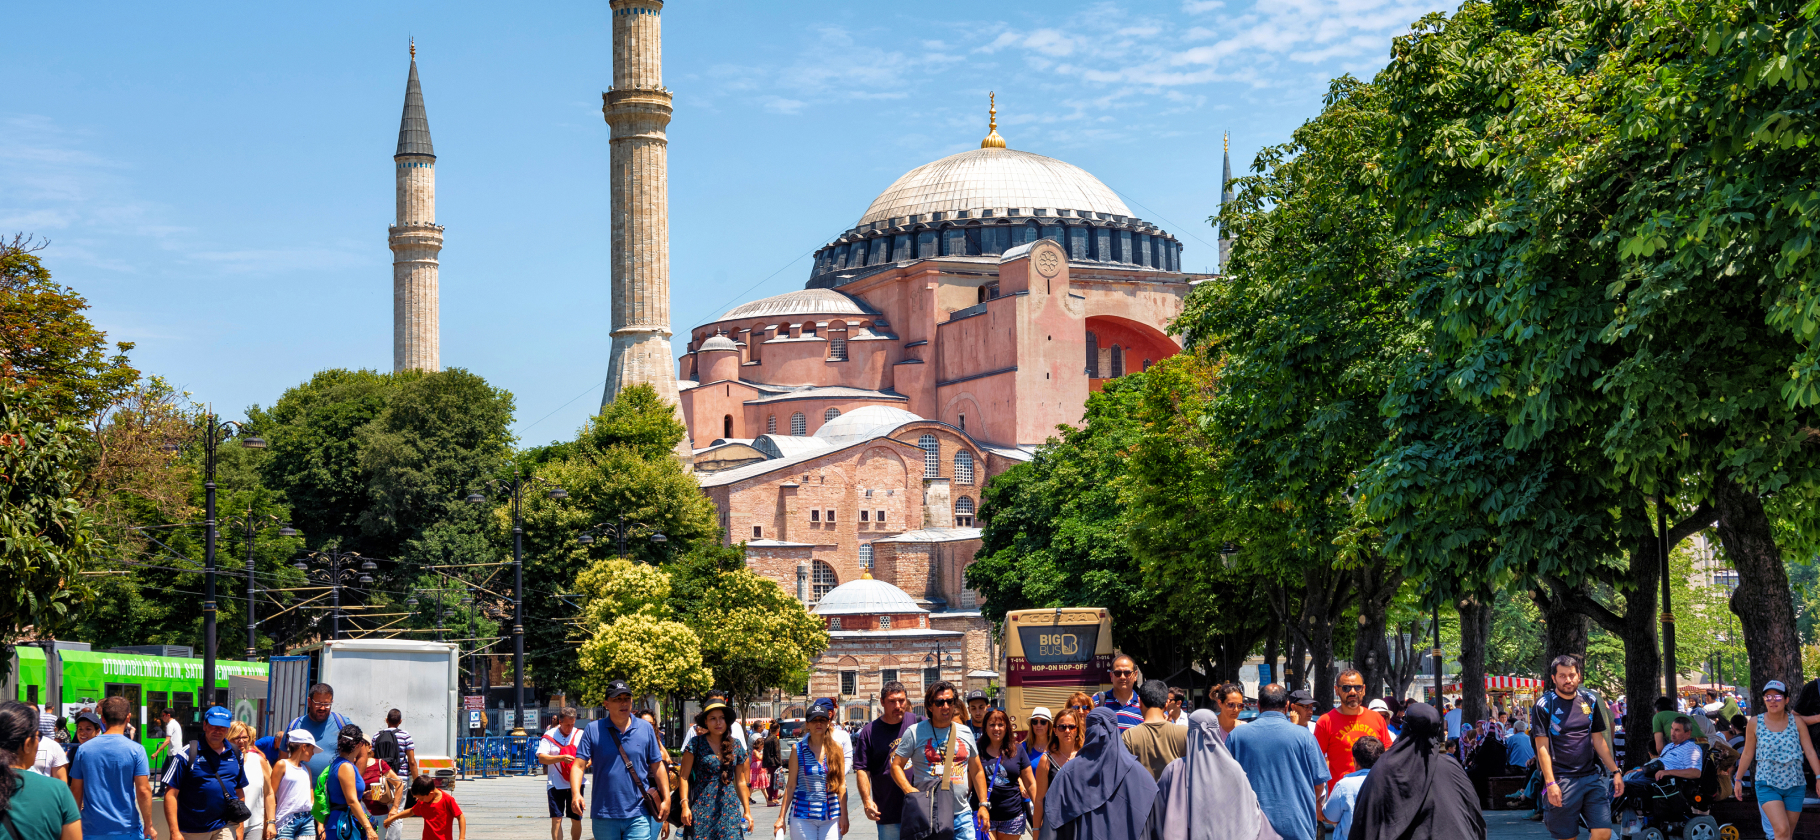 Отзывы туристов о Стамбуле: высокие цены, толпы людей и особая атмосфера